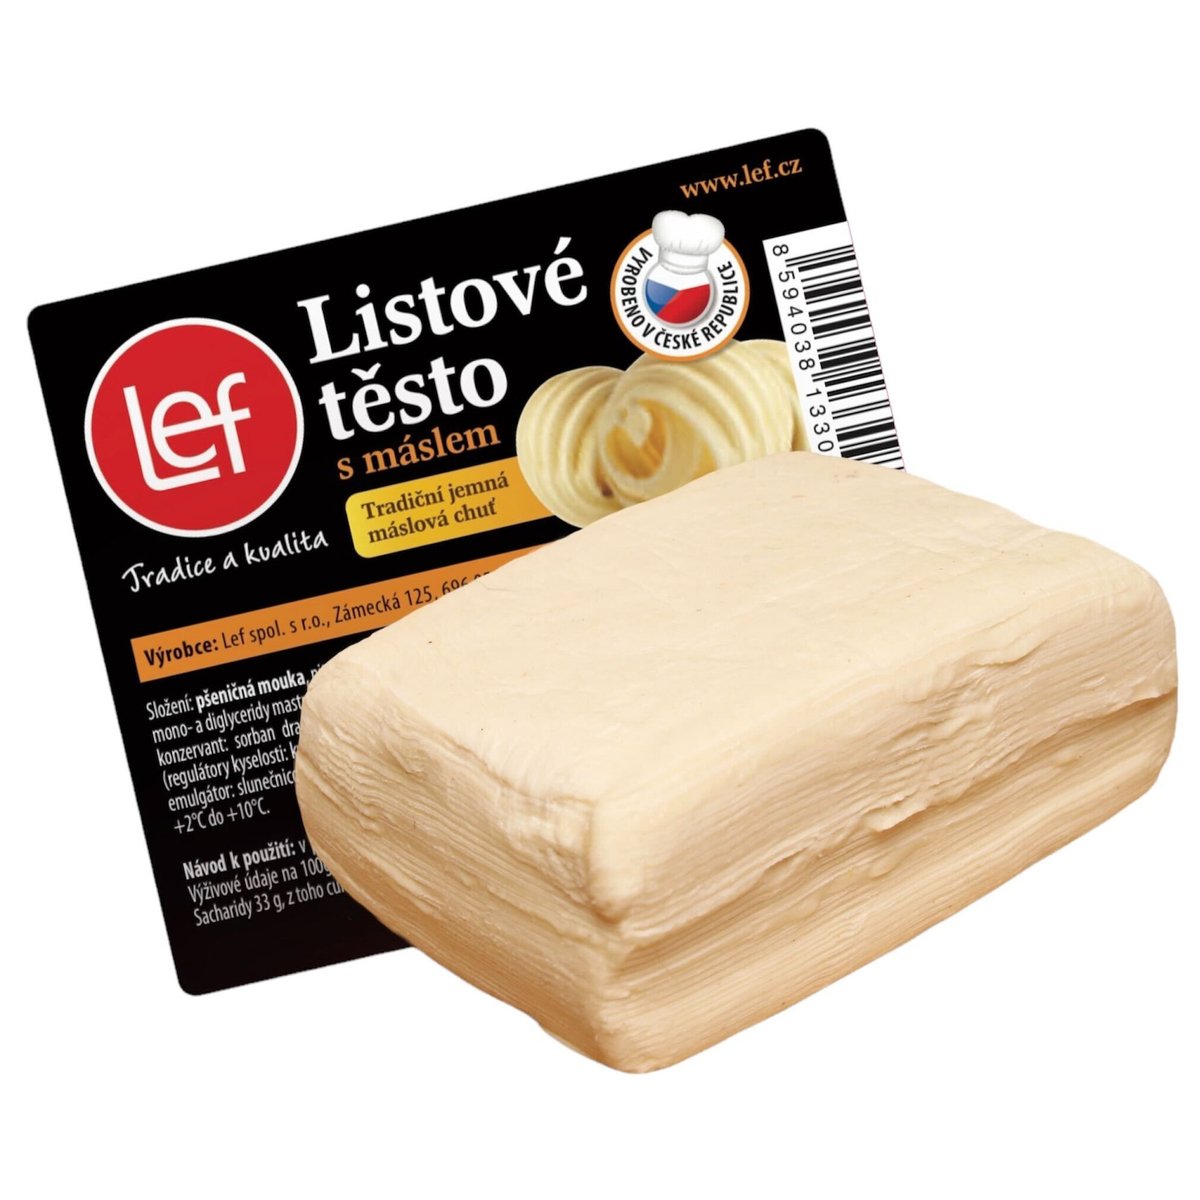 Lef Listové těsto s máslem